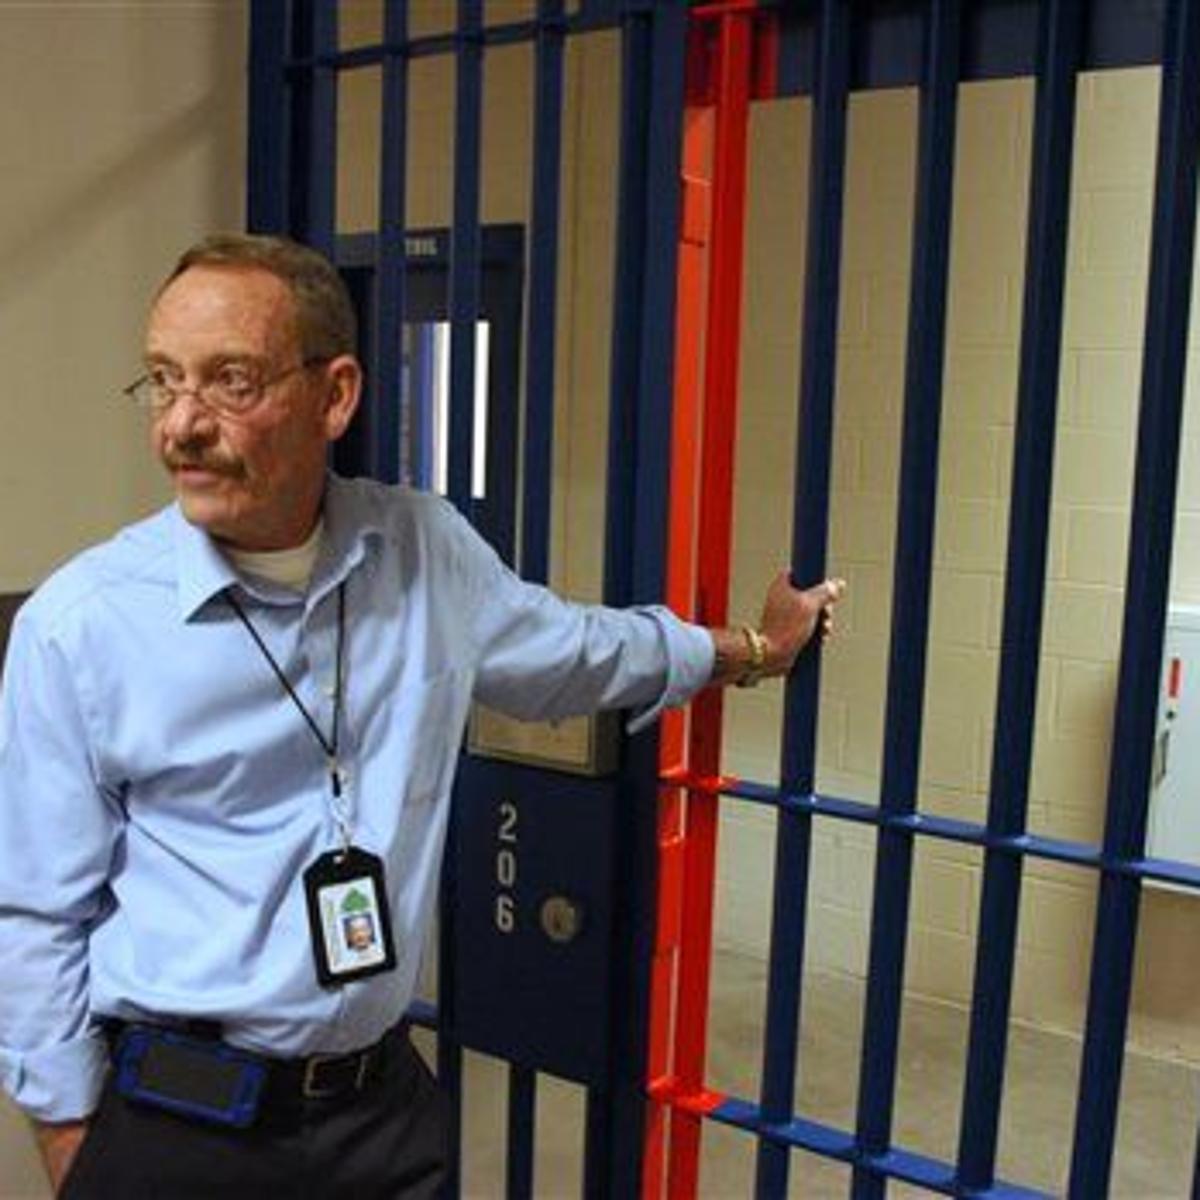 Jail inmates keller Look Up